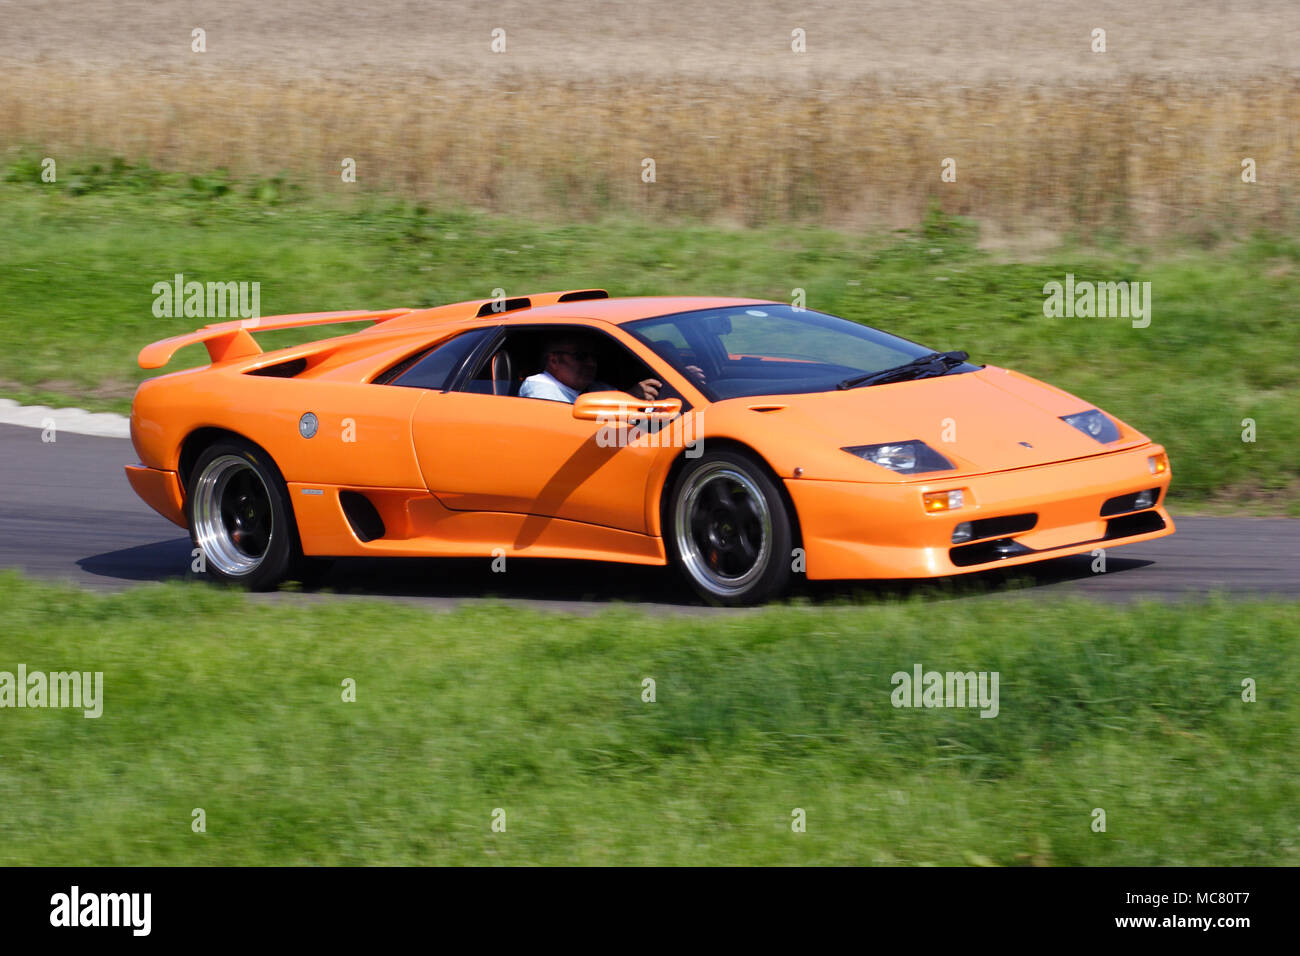 Orange Lamborghini Diablo GT '90 s (1990s) V 12 supercar schnelles Fahren und Rennsport auf Schiene. Stockfoto